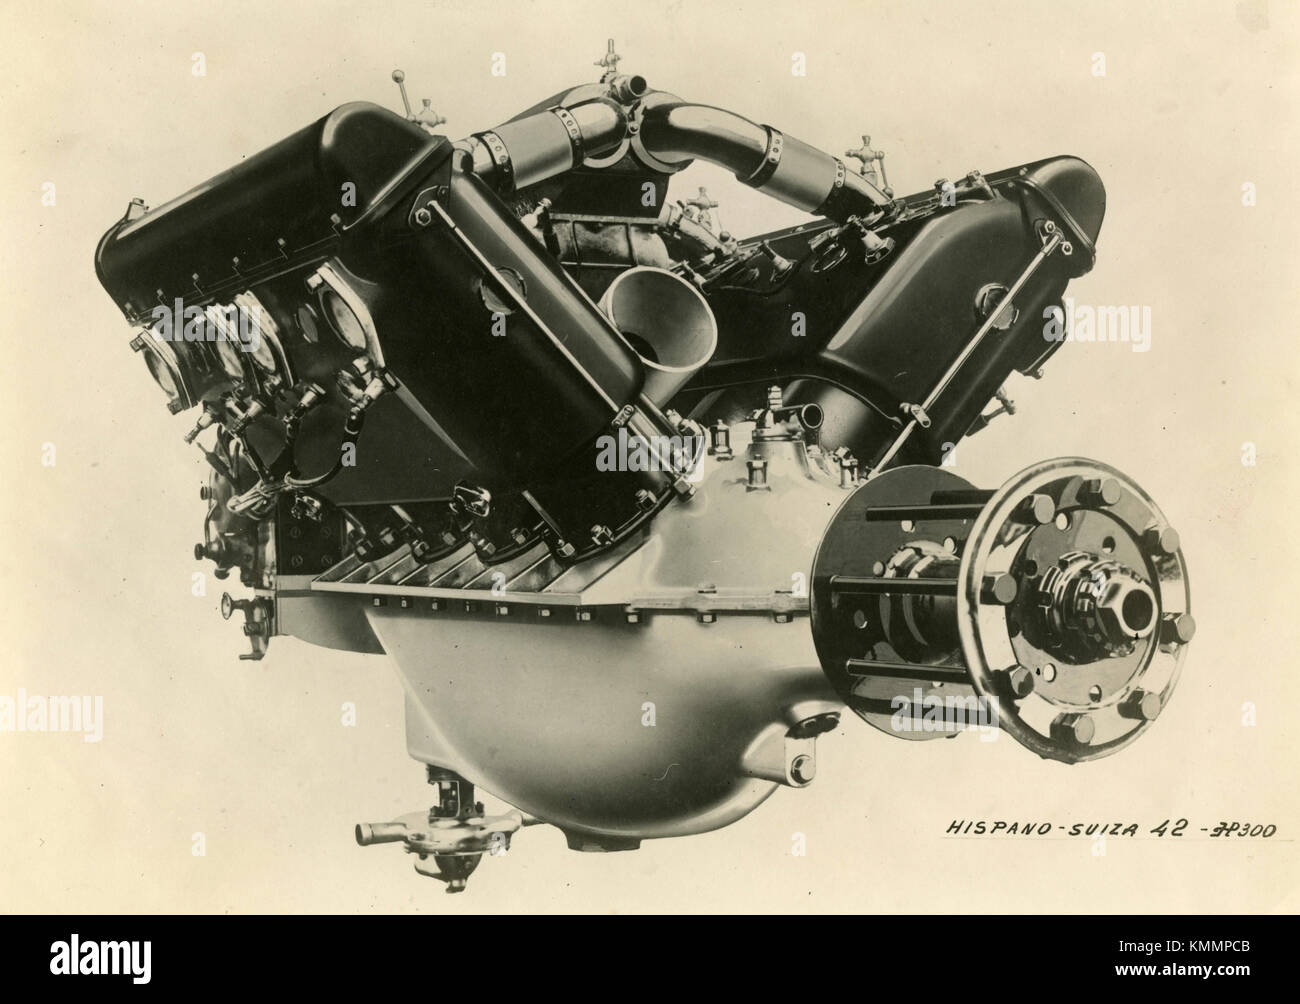 Hispano Suiza motore del velivolo 42 HP 300, vista posteriore, Francia 1920s Foto Stock